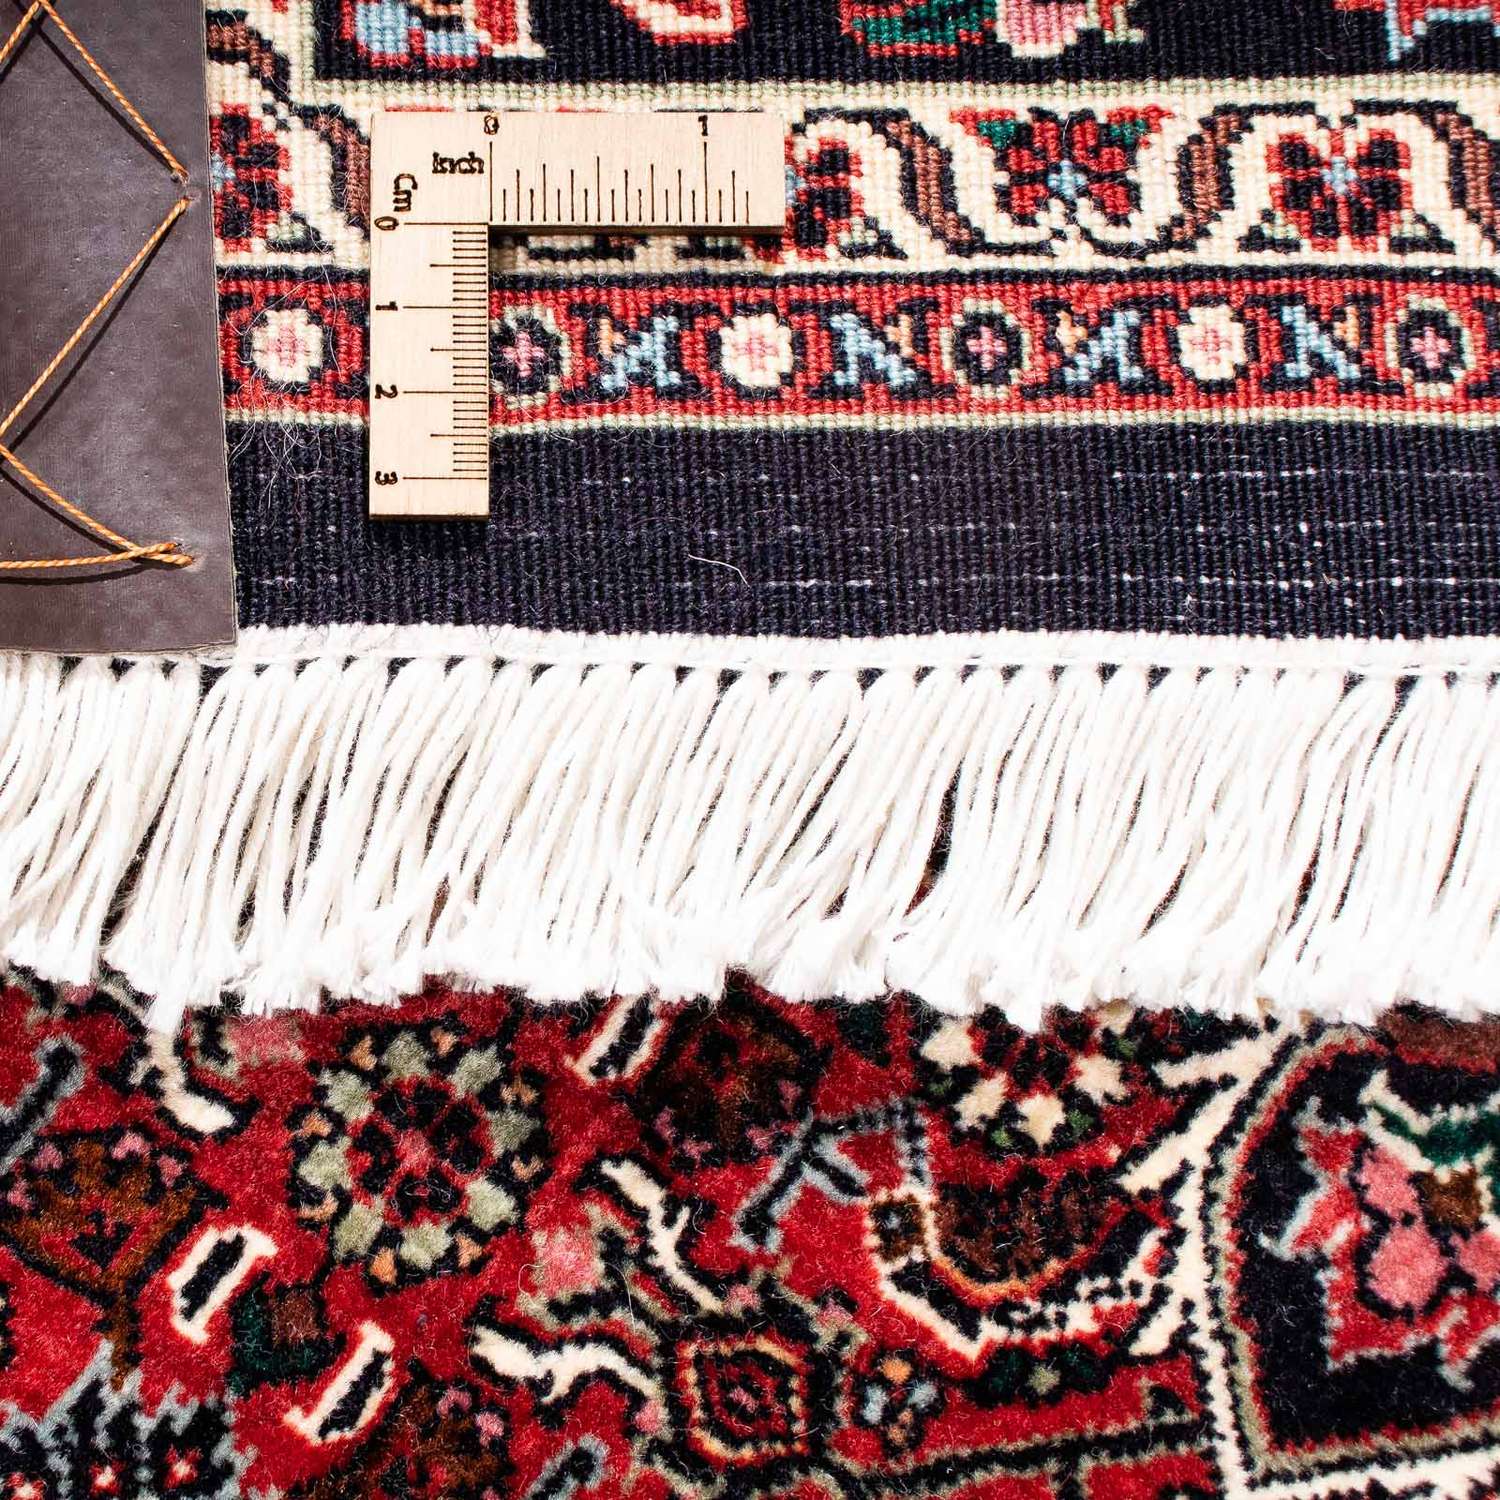 Perzisch tapijt - Bijar - 240 x 166 cm - donkerrood